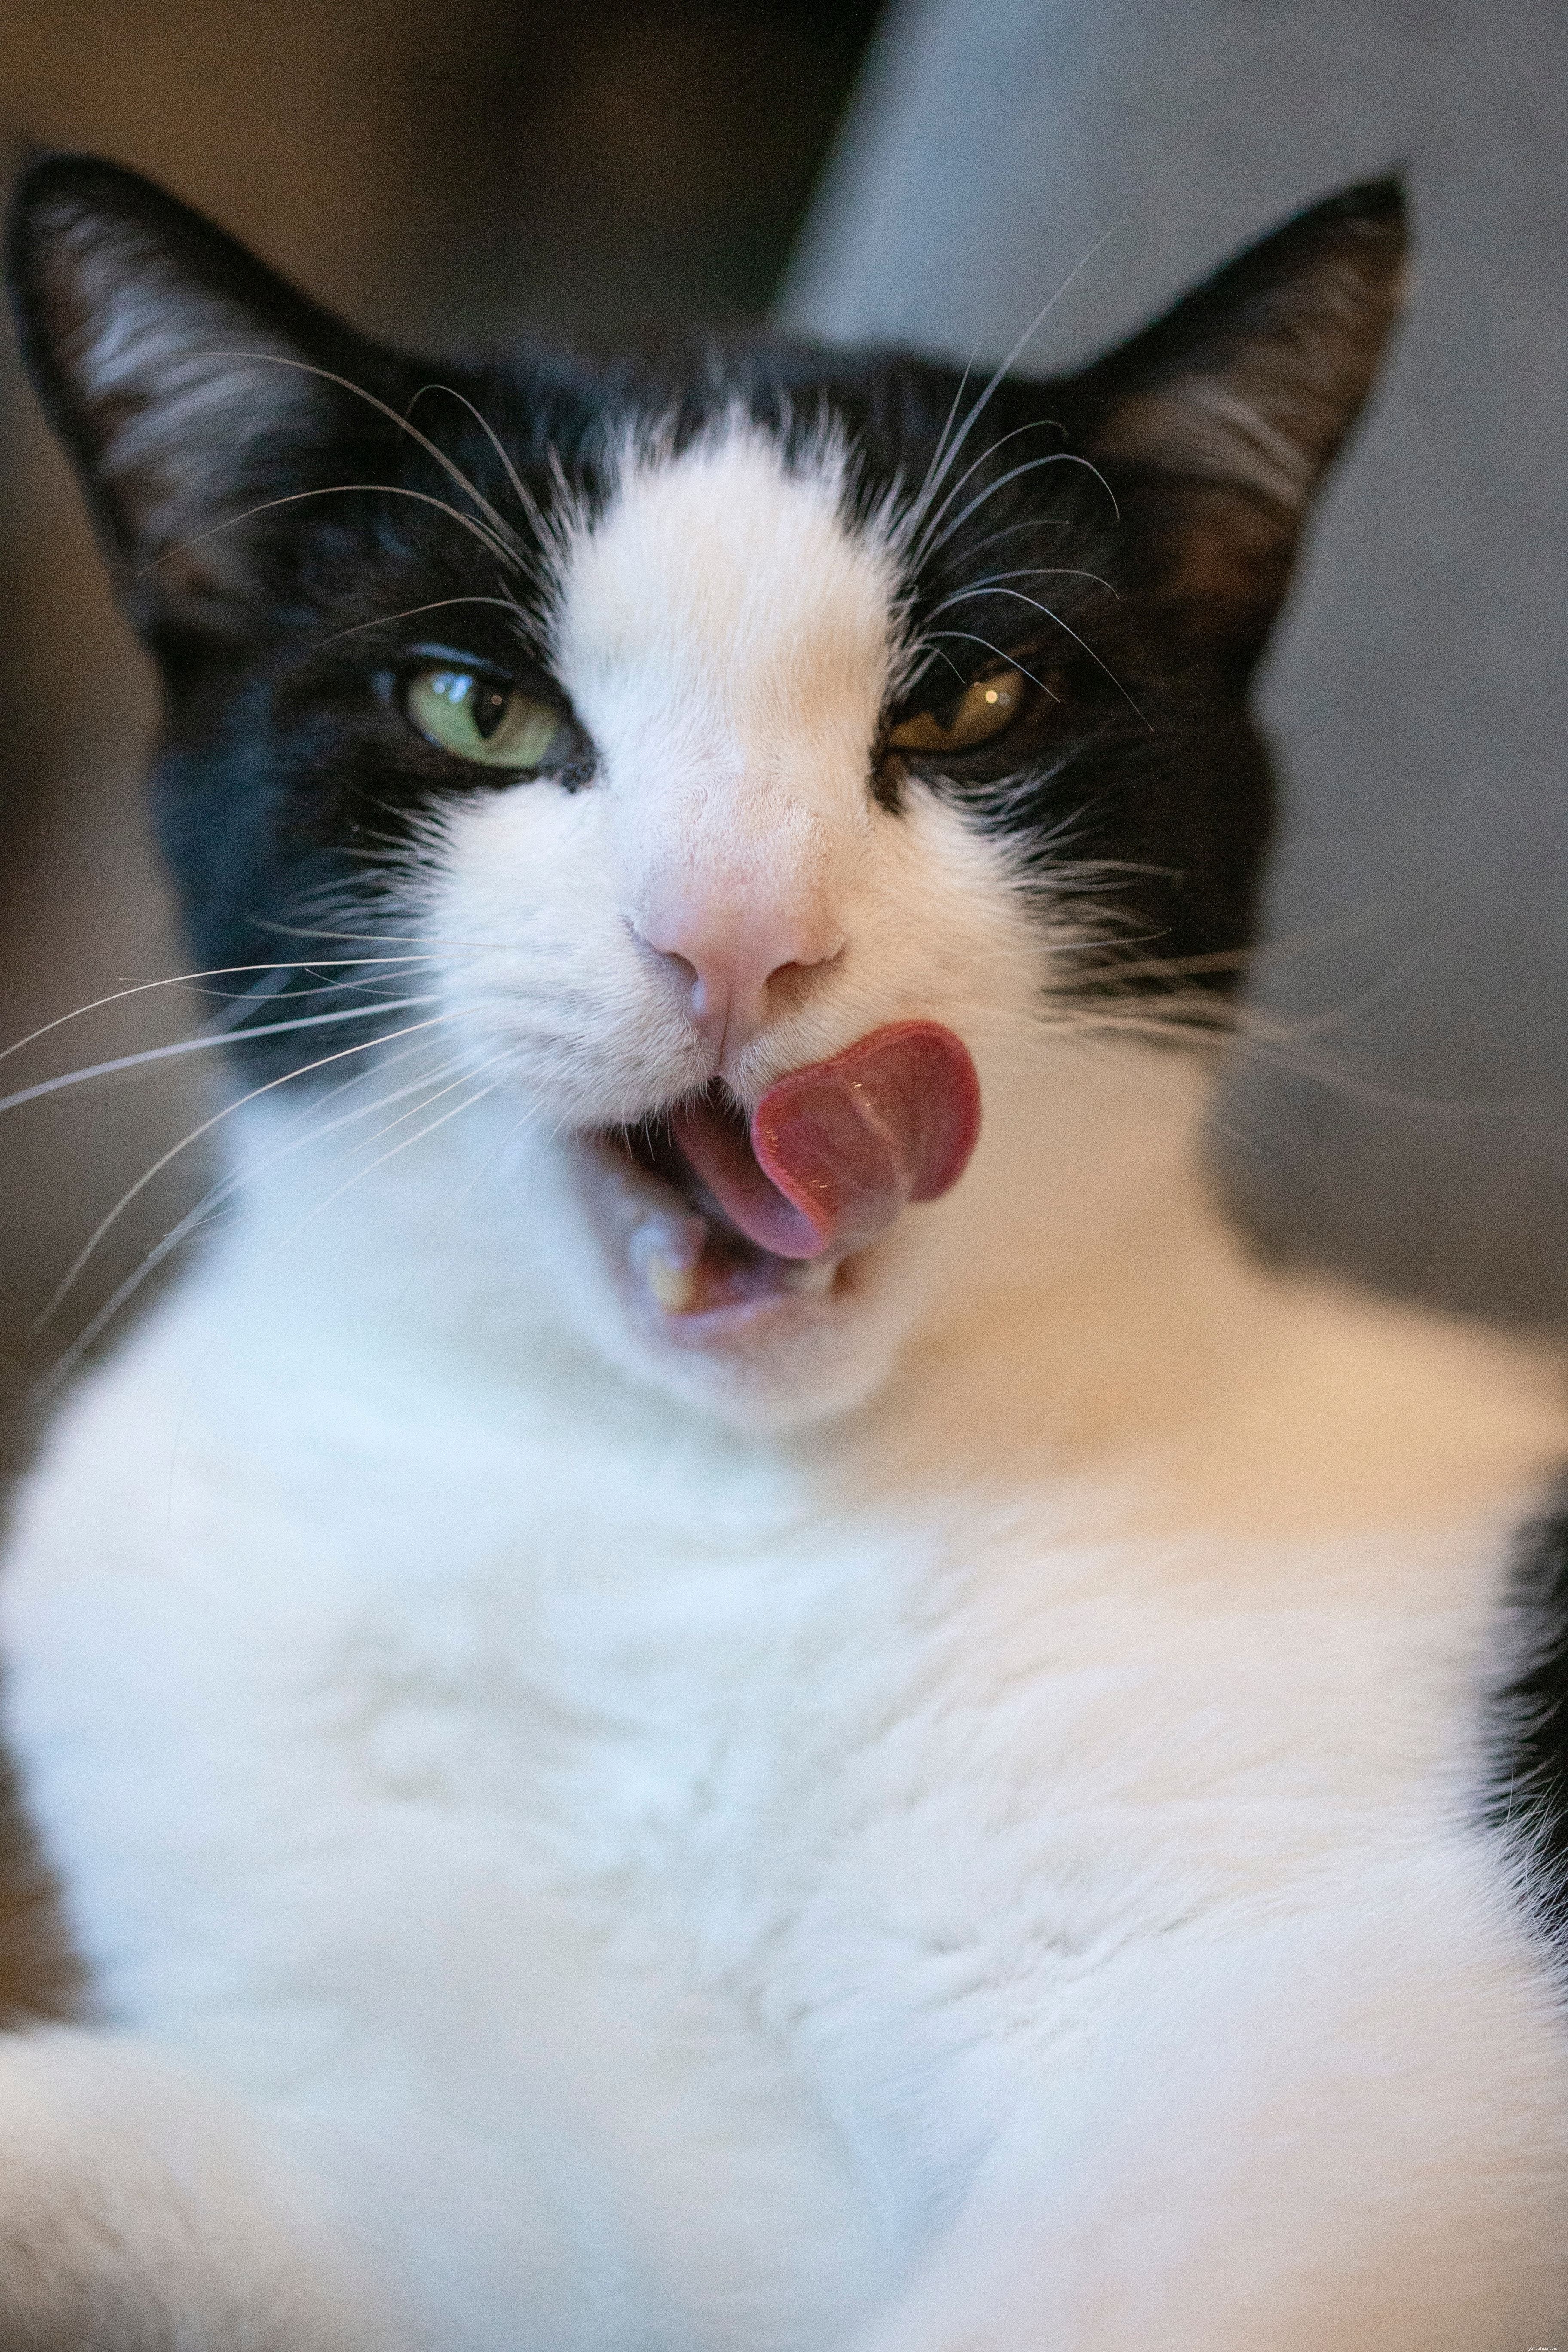 Il motivo per cui i gatti leccano i loro proprietari non è perché pensano che tu sia gustoso o che abbia bisogno di una lavata. È più probabile che vogliano formare uno stretto legame